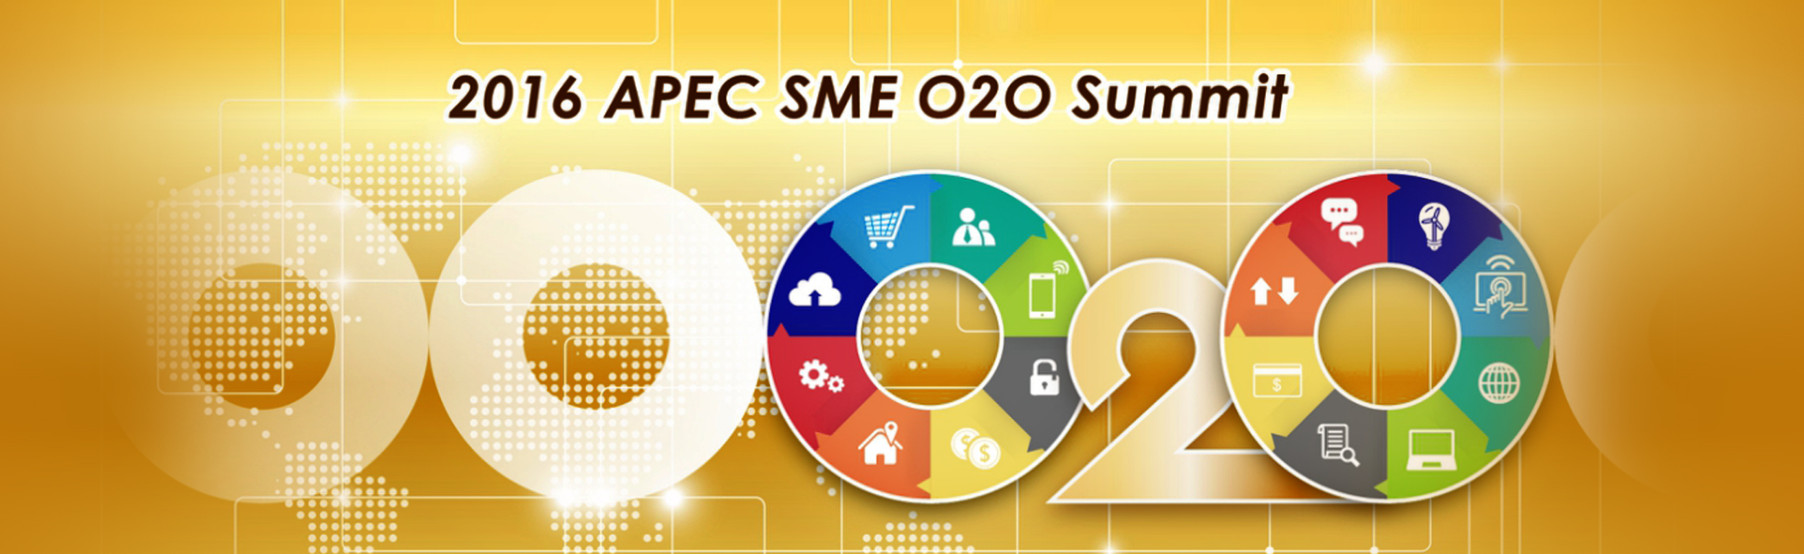 2016 APEC SME O2O Summit - TAIPEI 2016